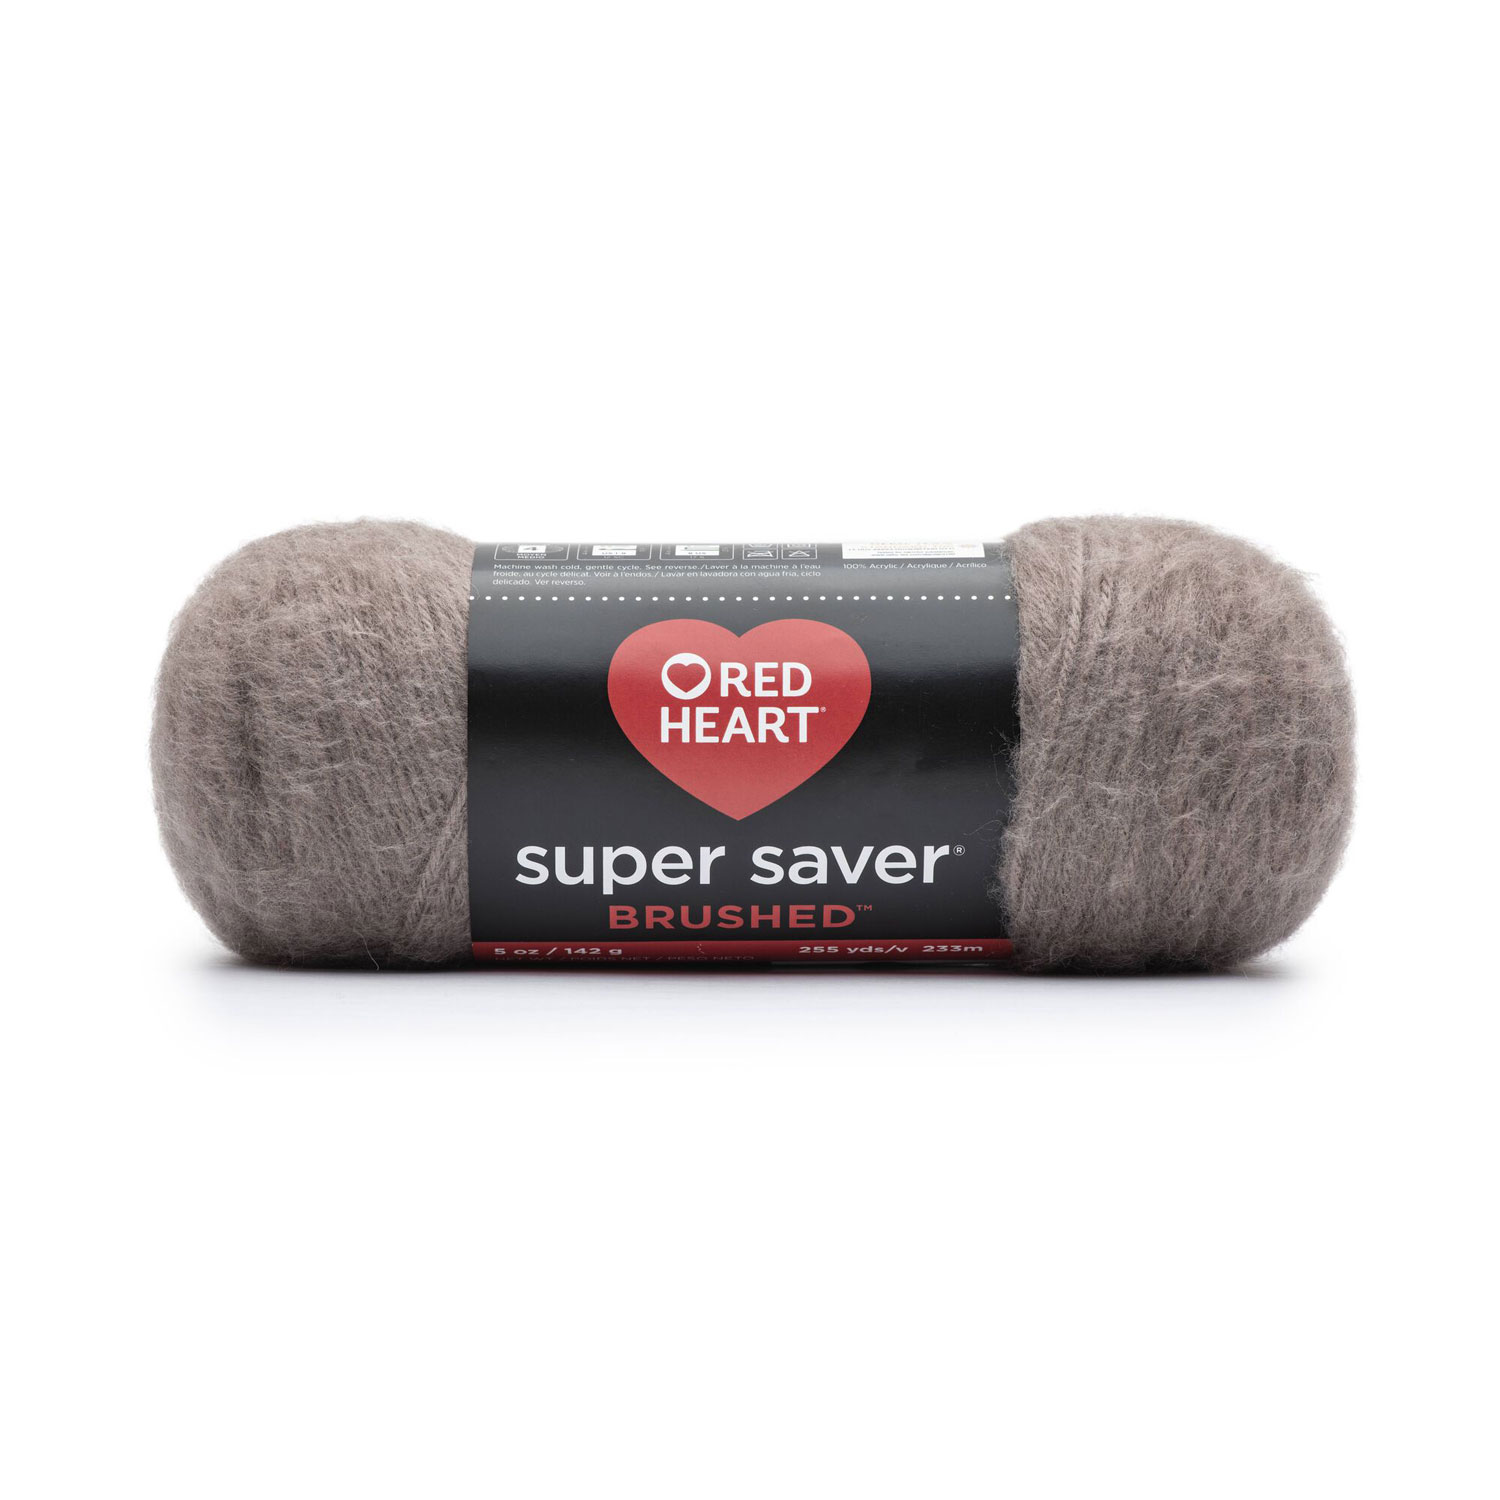 Red Heart Super Saver Brushed - Yarn, mink